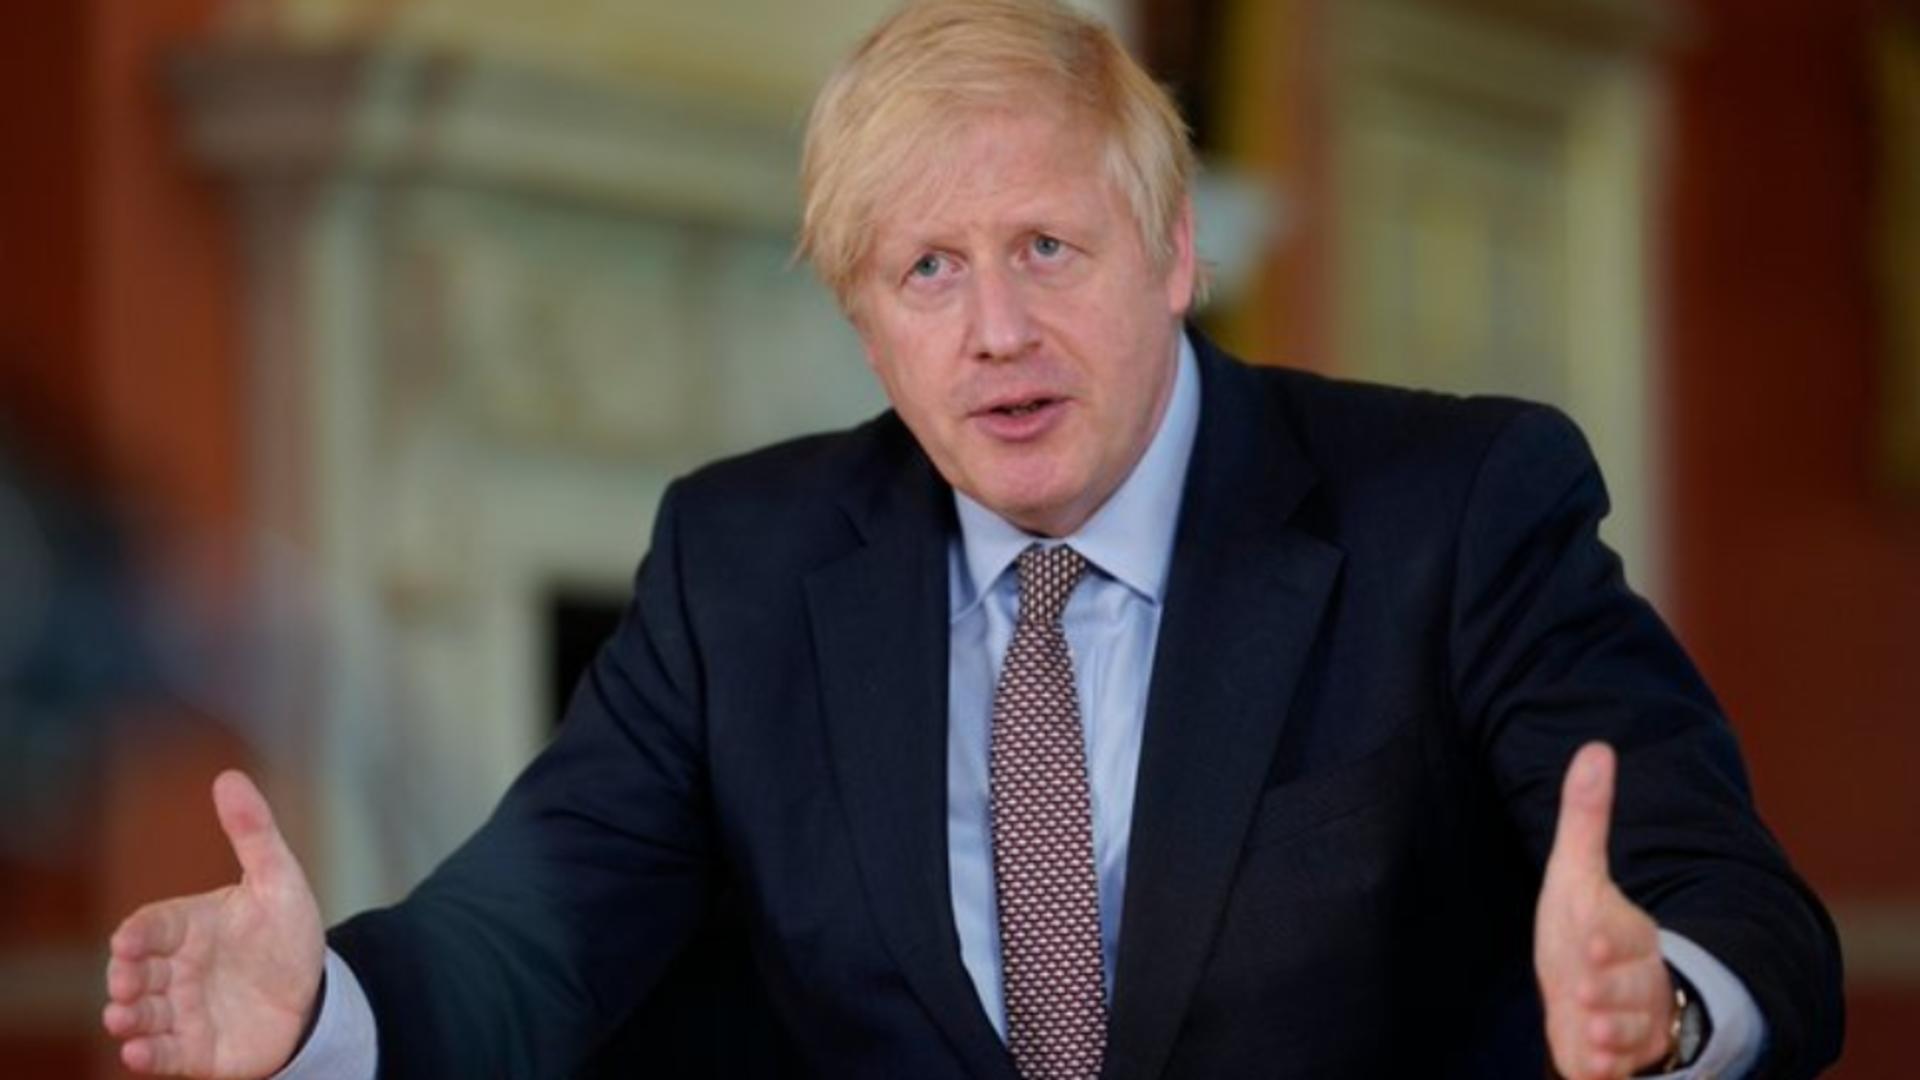 Boris Johnson recunoaște că a indus în eroare parlamentul britanic privind petrecerile din pandemie, dar spune că a fost cu ”bună credință”